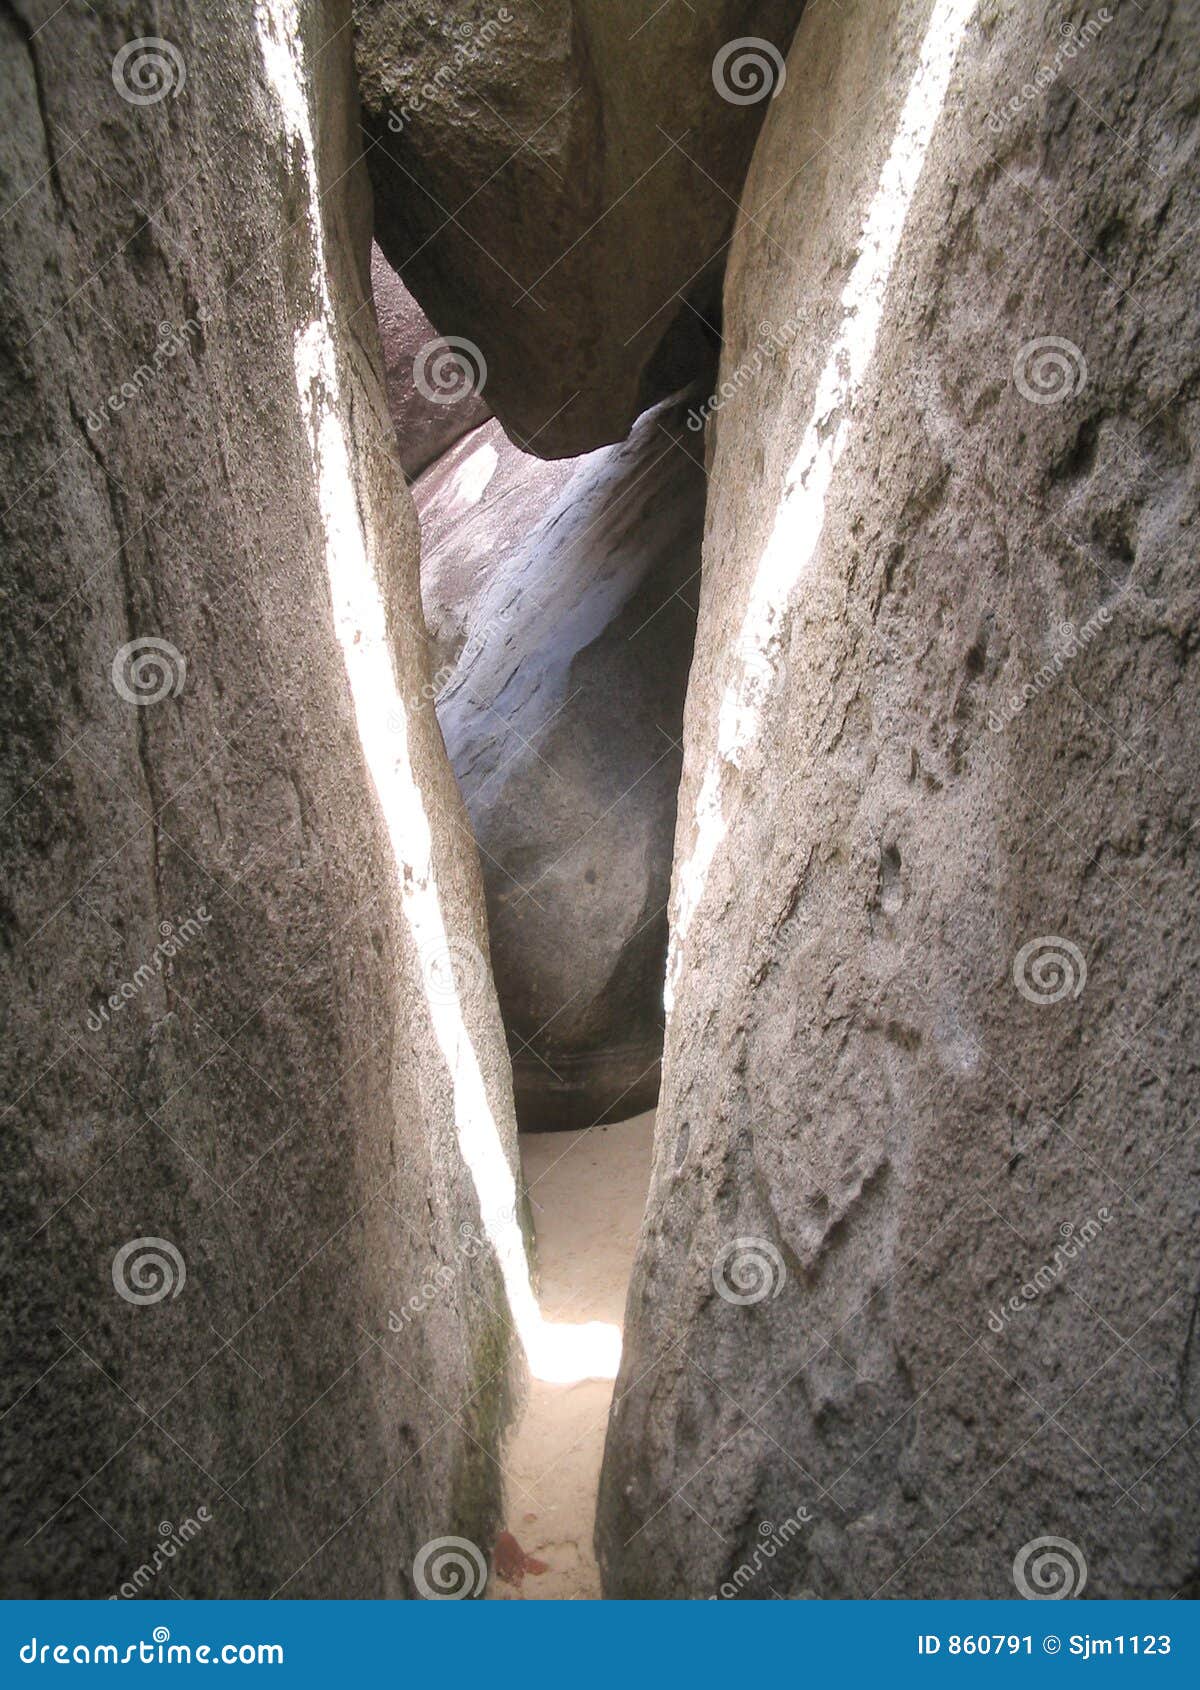 the caves at virgin gorda: crevice